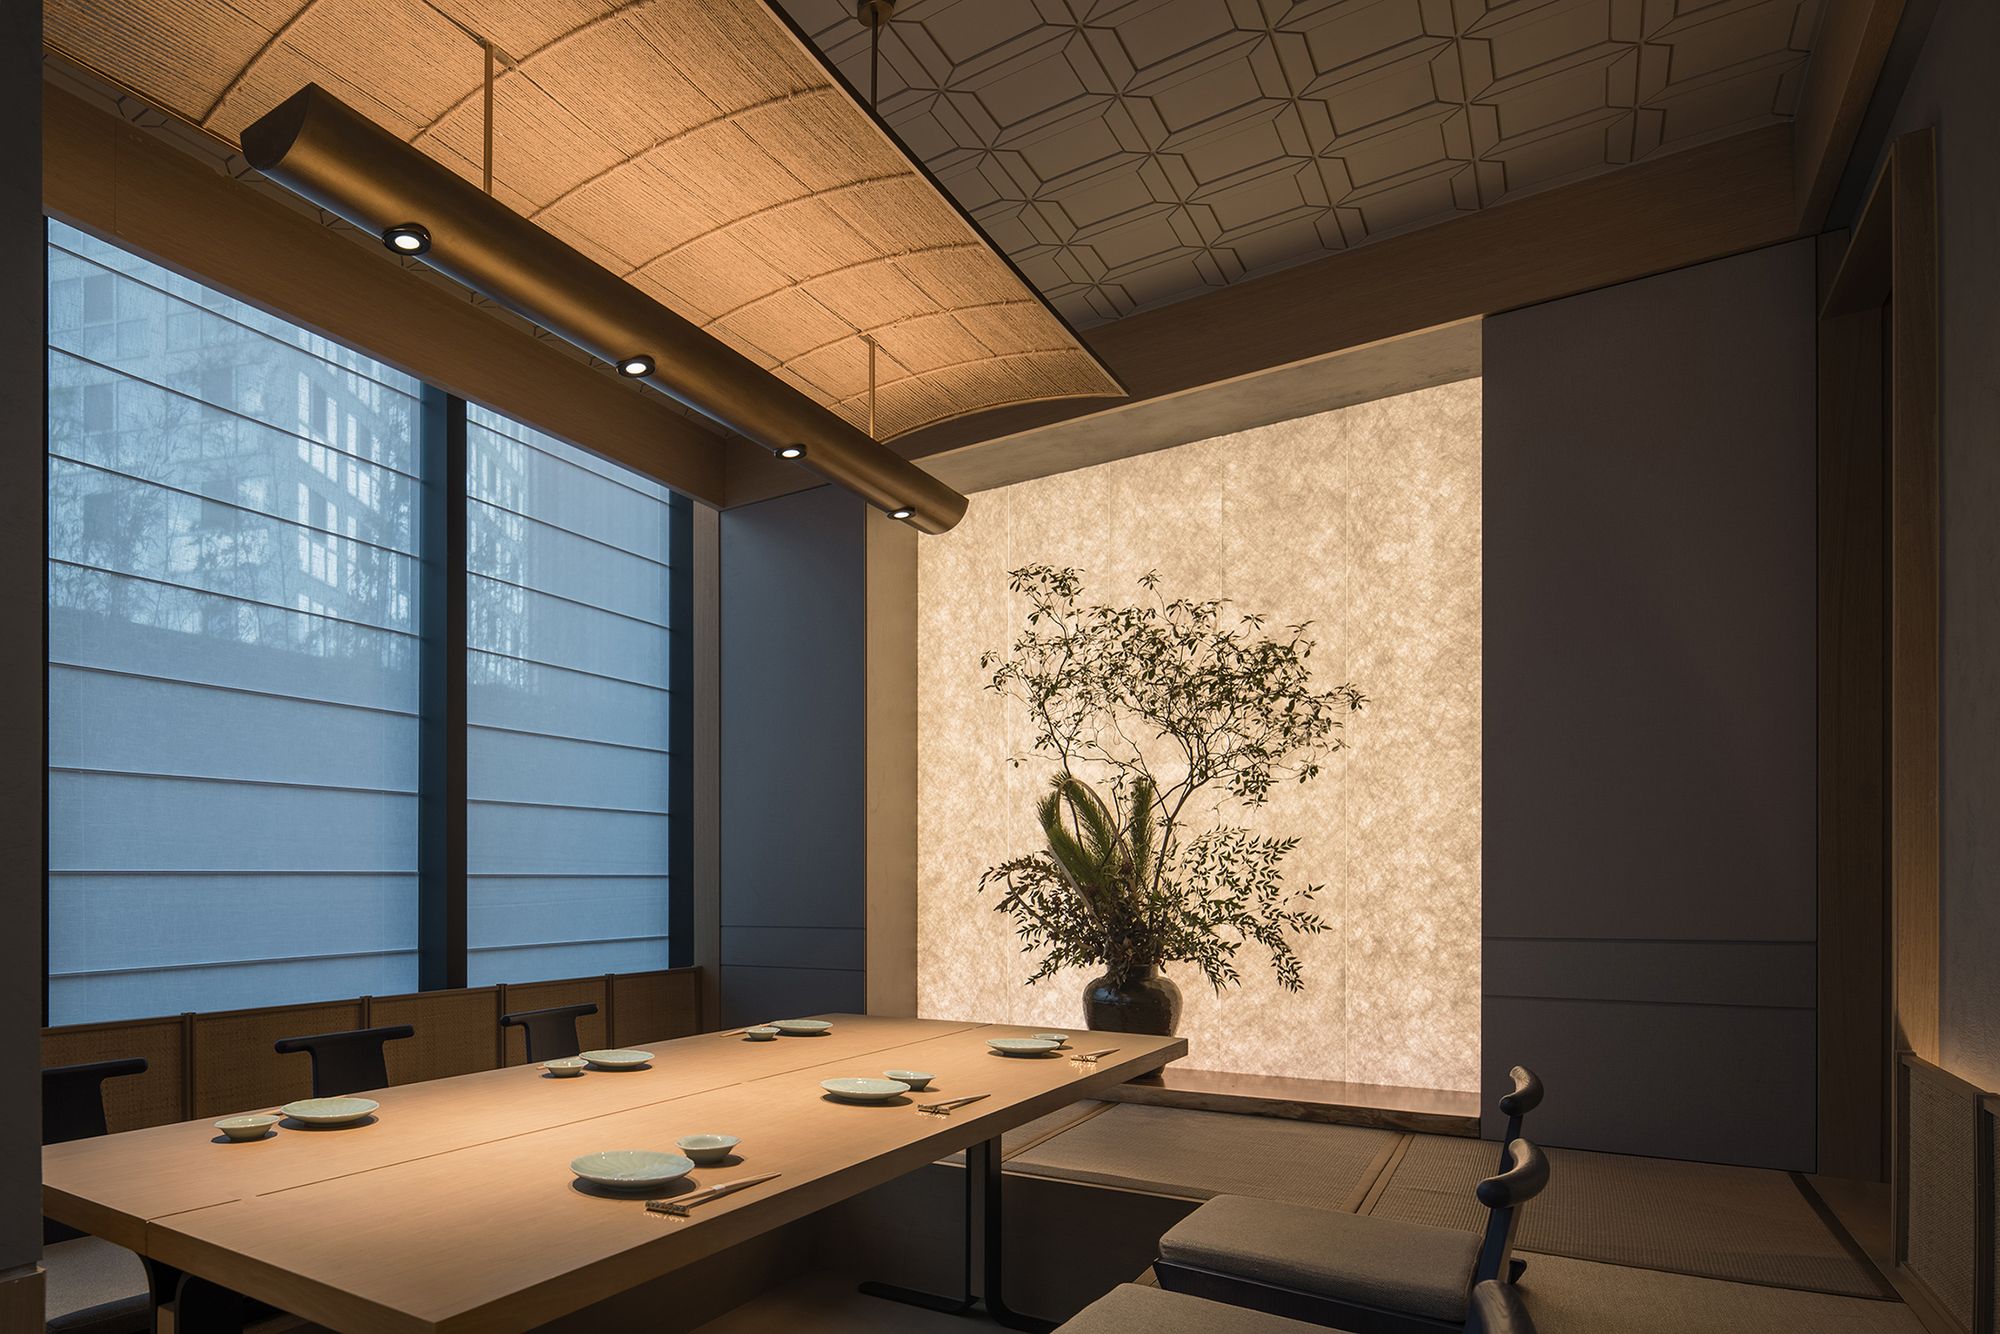 图片[8]|Aumann日本料理餐厅|ART-Arrakis | 建筑室内设计的创新与灵感